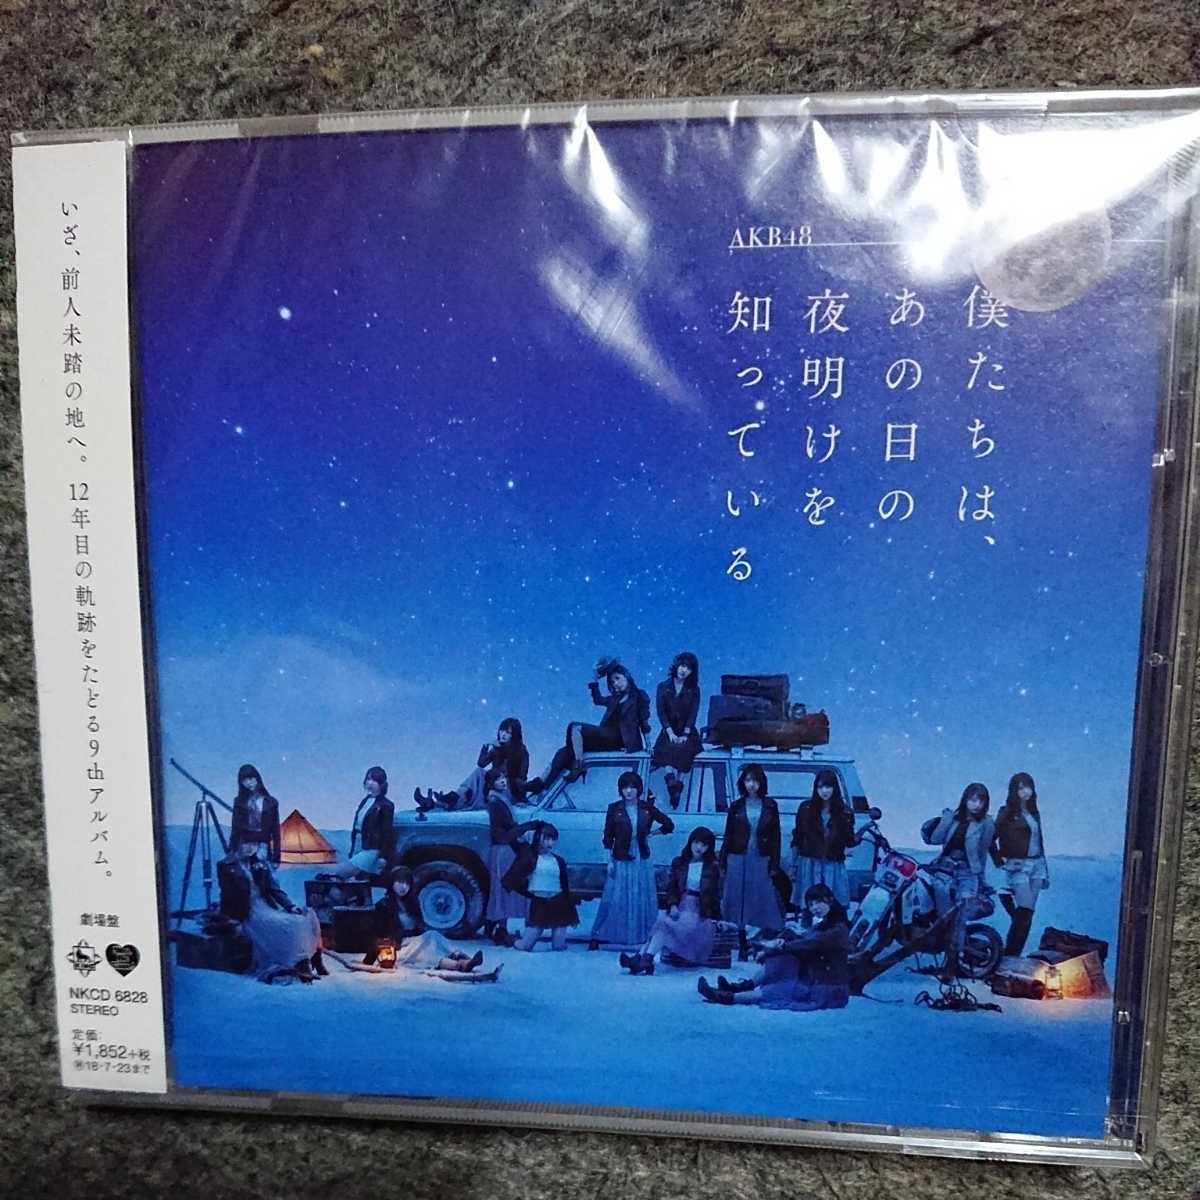 「帰り道は遠回りしたくなる(TYPE-A)」乃木坂46 CD Blu-ray付き 2枚組_画像1